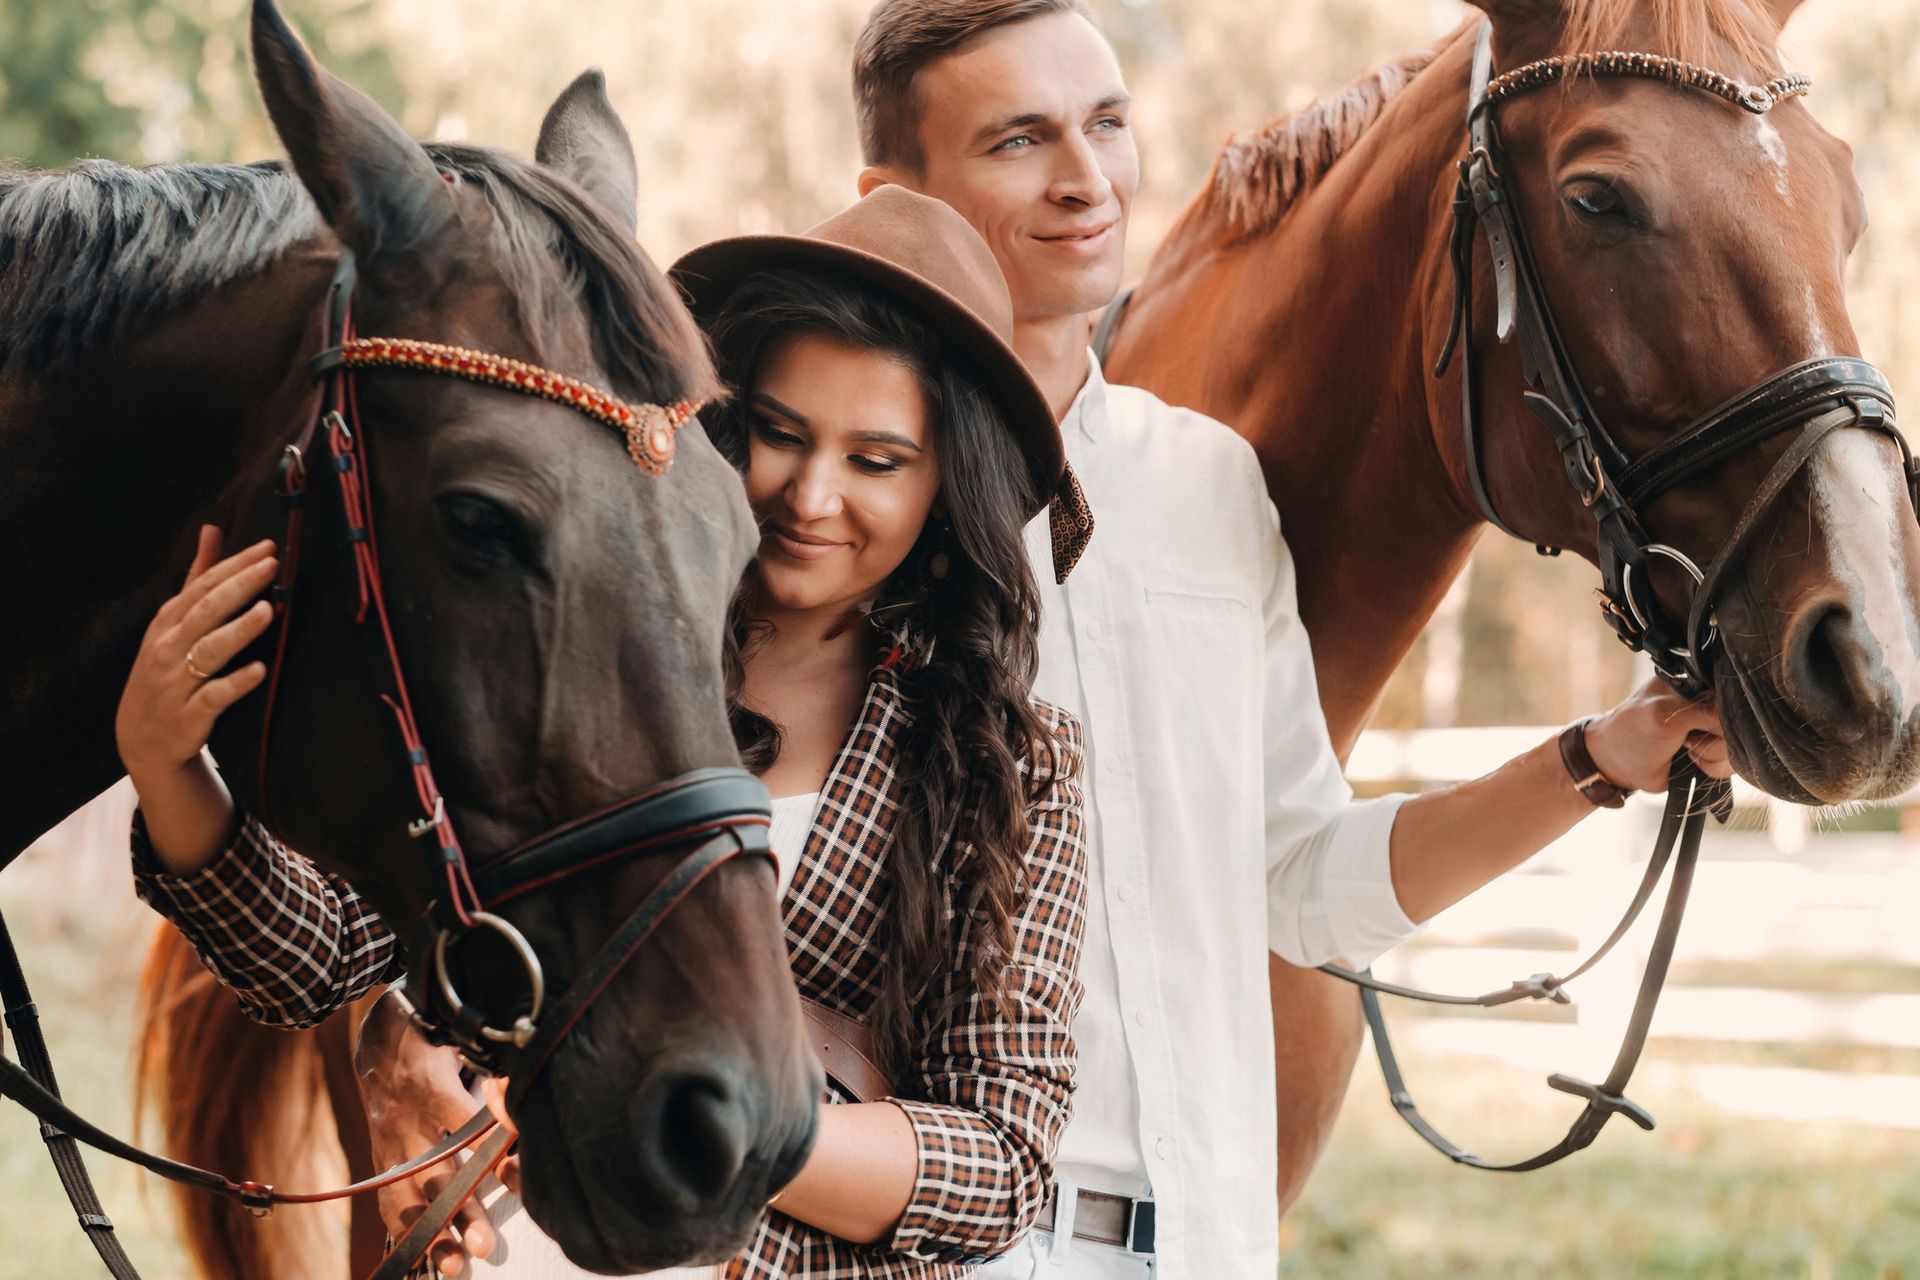 PTSS Voorbij-Holistisch herstel van PTSS en Trauma-Johan Reinhoudt-Mooie jonge hooggevoelige-HSP-vrouw met paard en een jongeman met paard